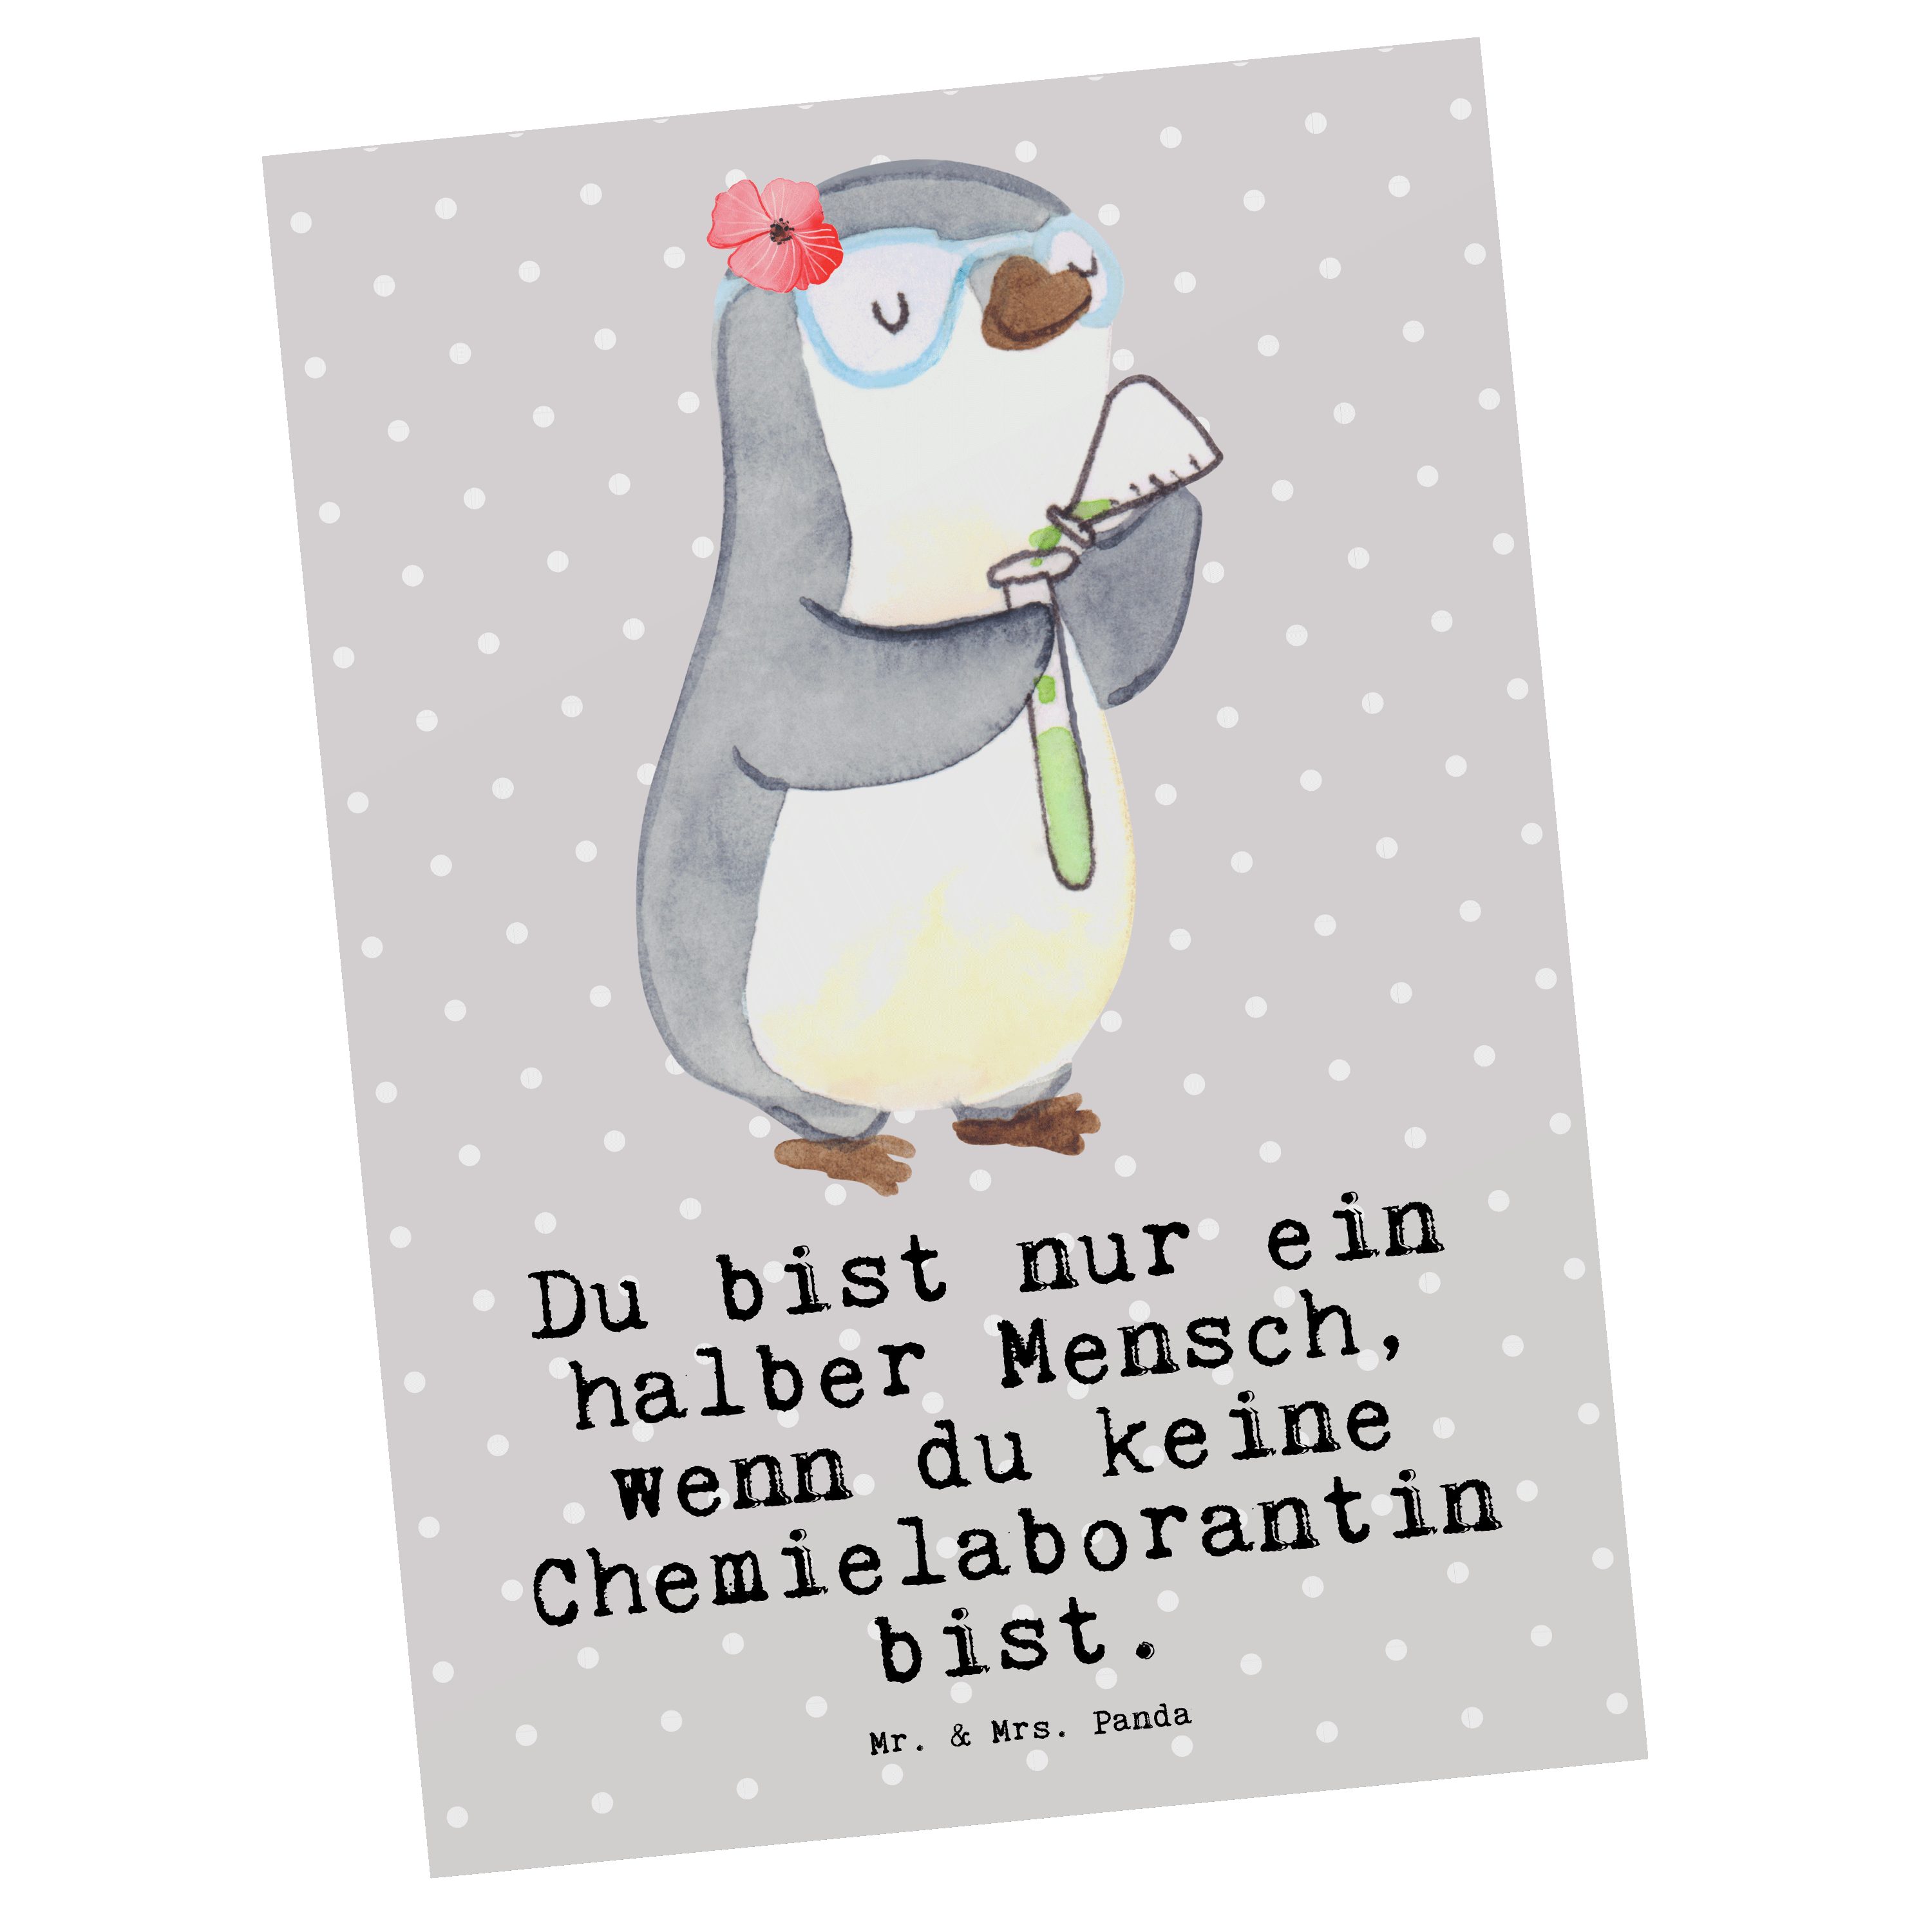 Mr. & Mrs. Panda Postkarte Chemielaborantin mit Herz - Grau Pastell - Geschenk, Chemieunterricht